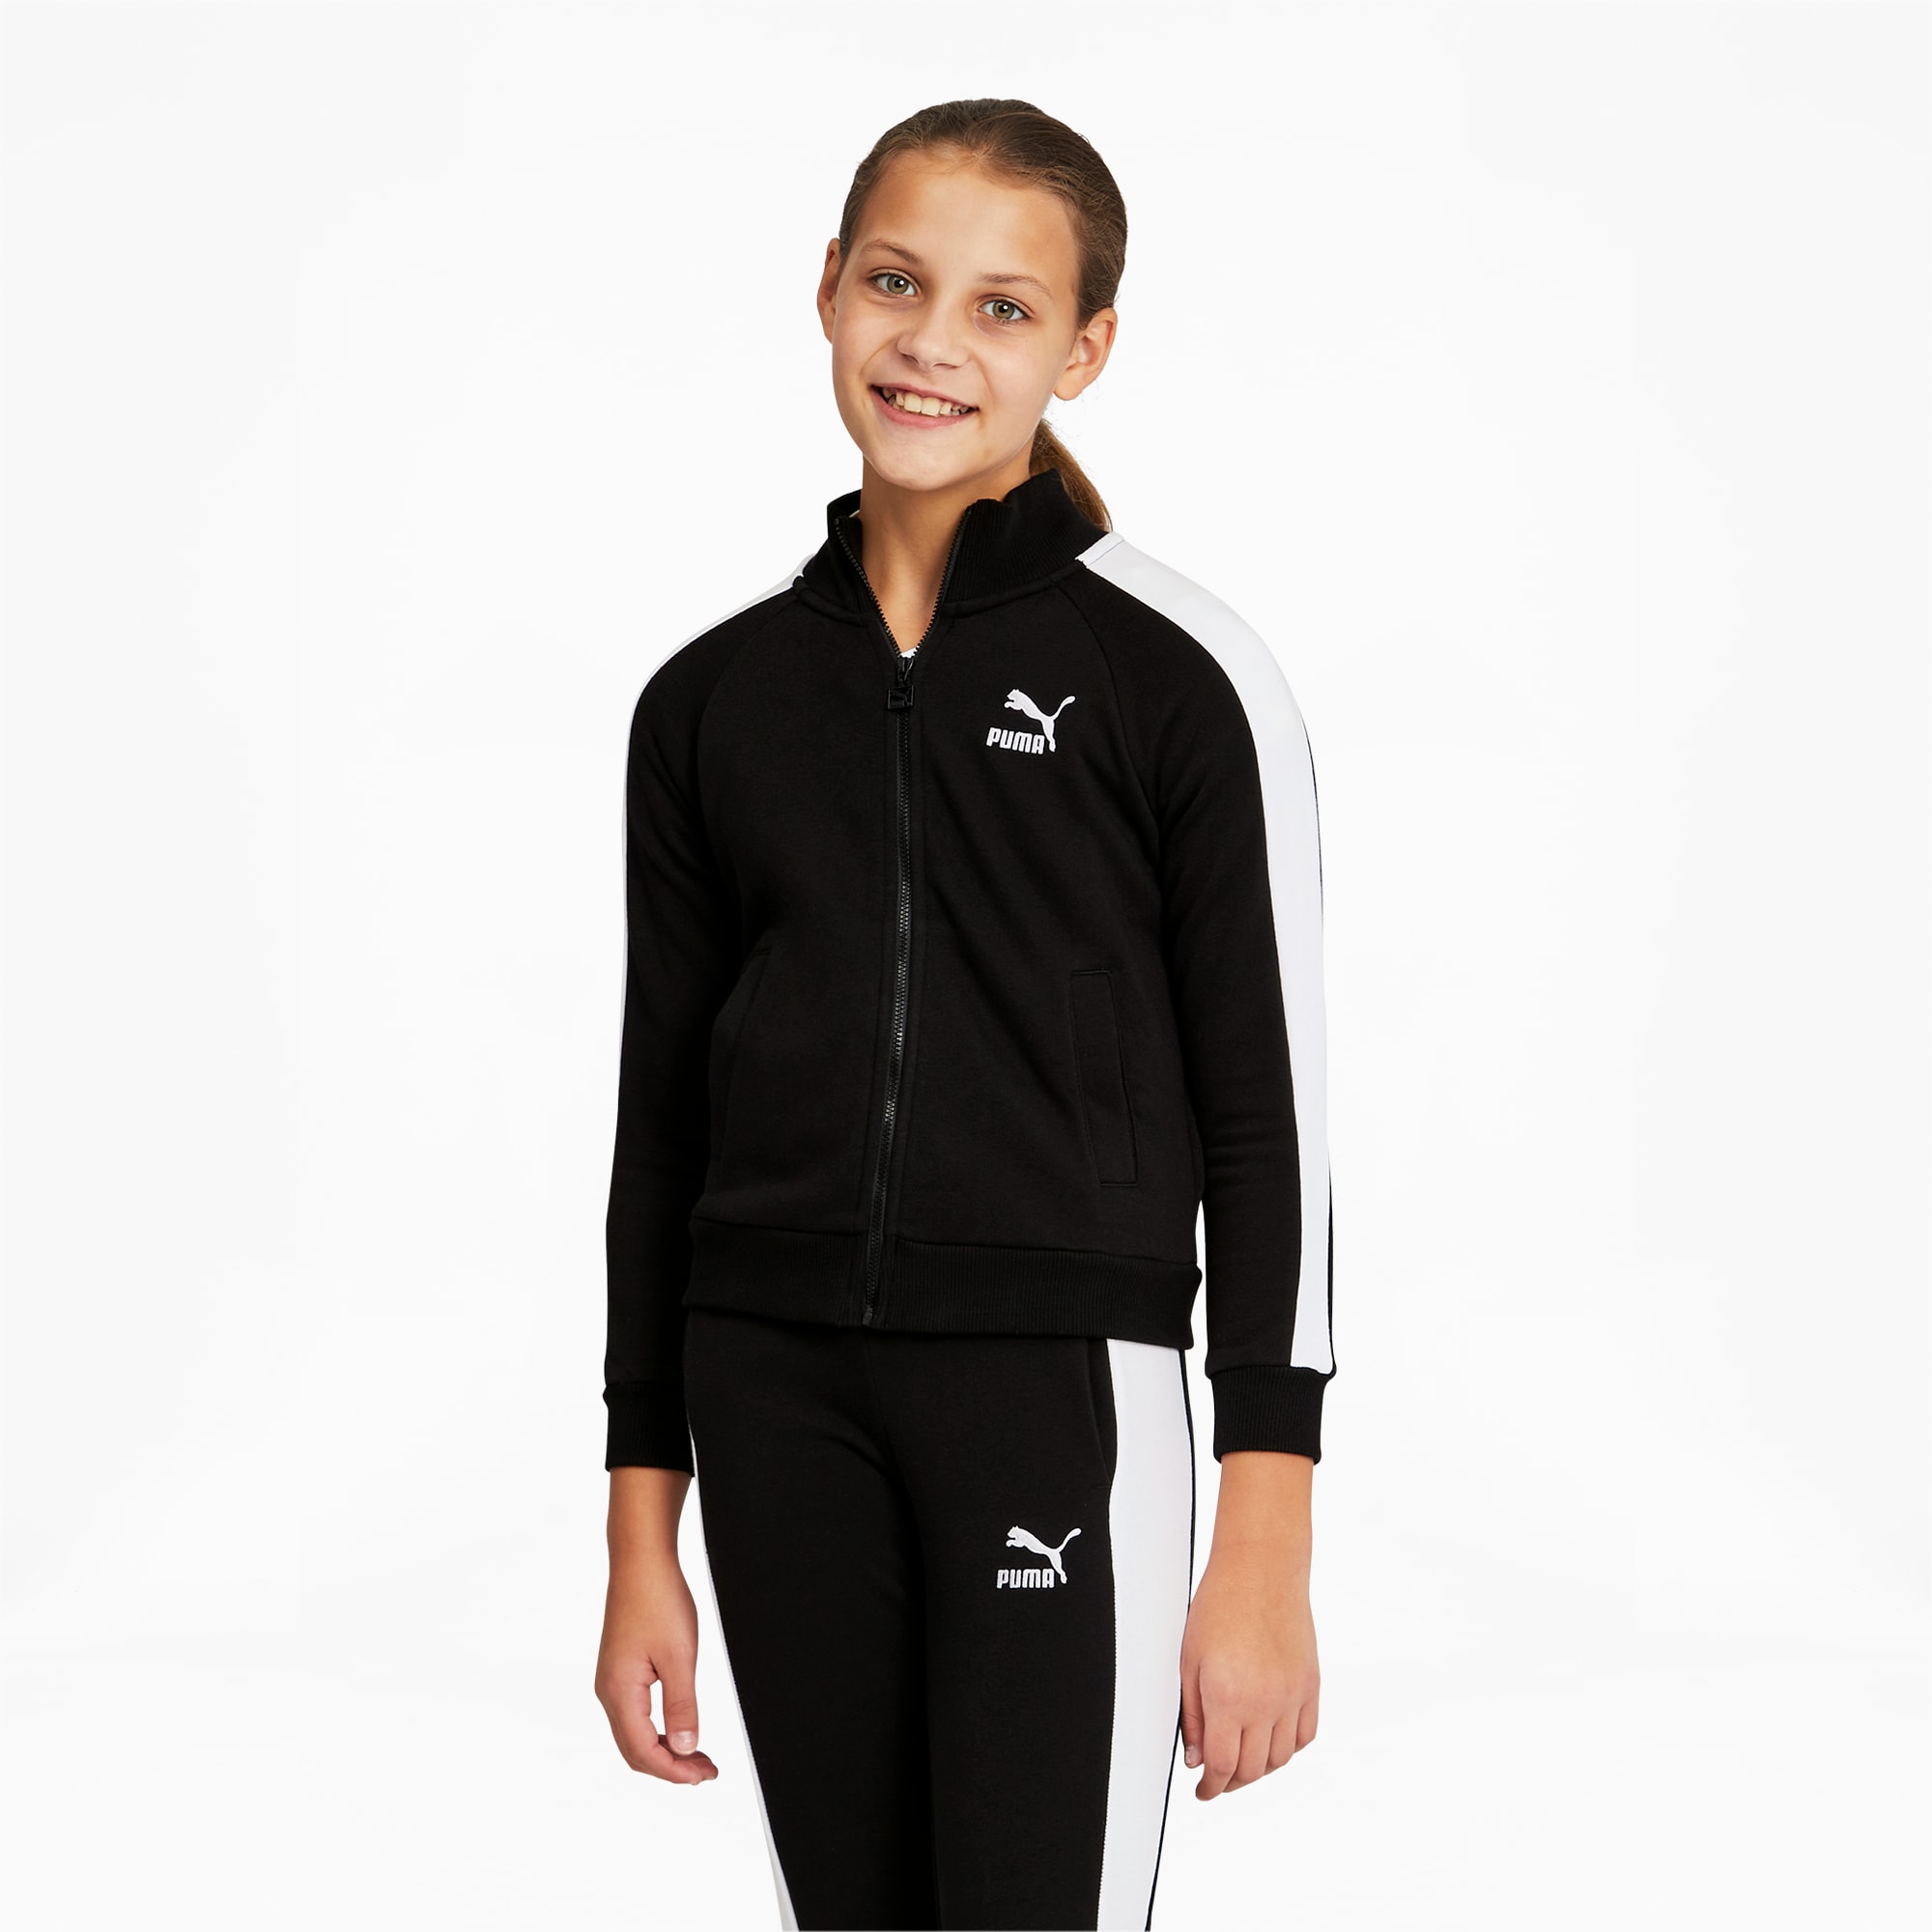 PUMA Classics T7 Trainingsjacke Für Teenager Für Kinder, Schwarz, Größe: 176, Kleidung